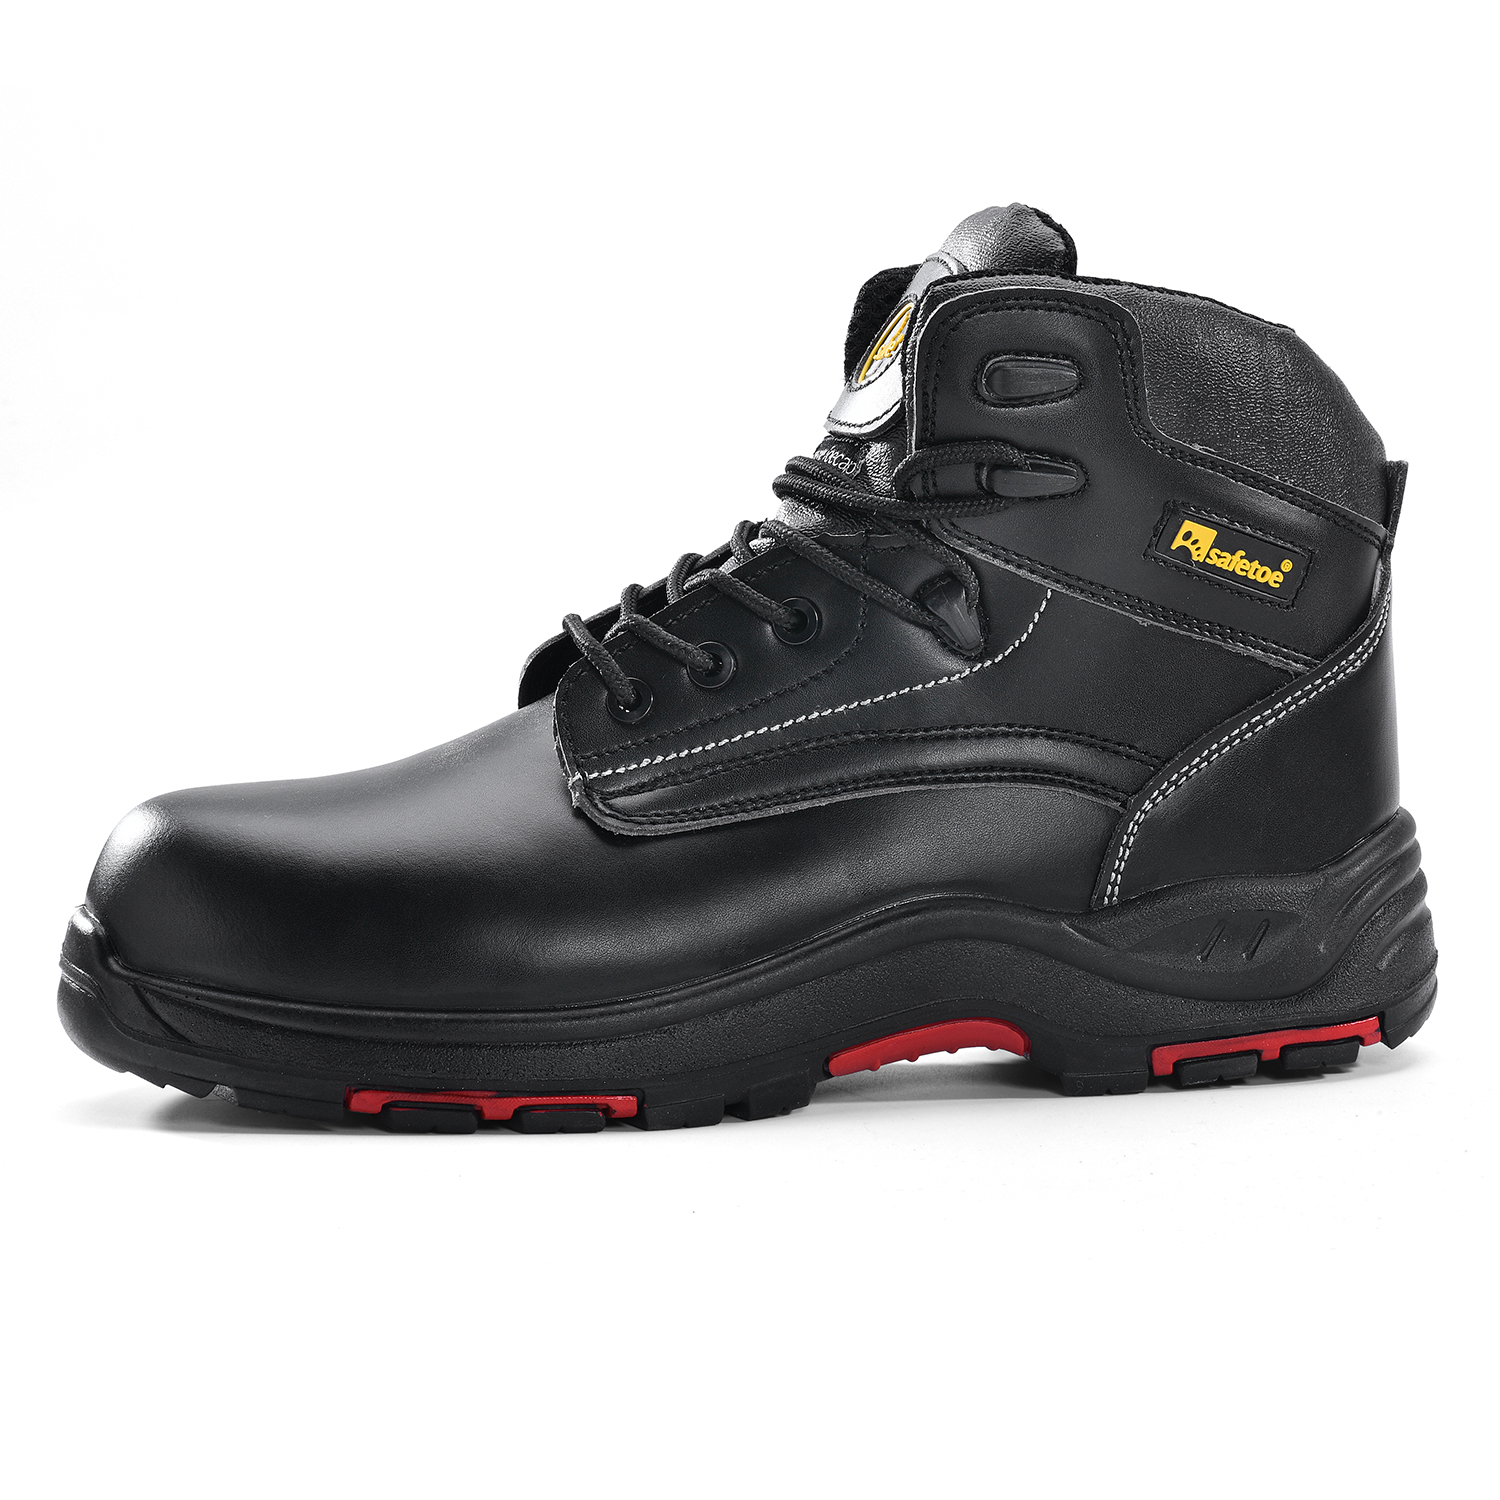 Waterproof EH work boots in black